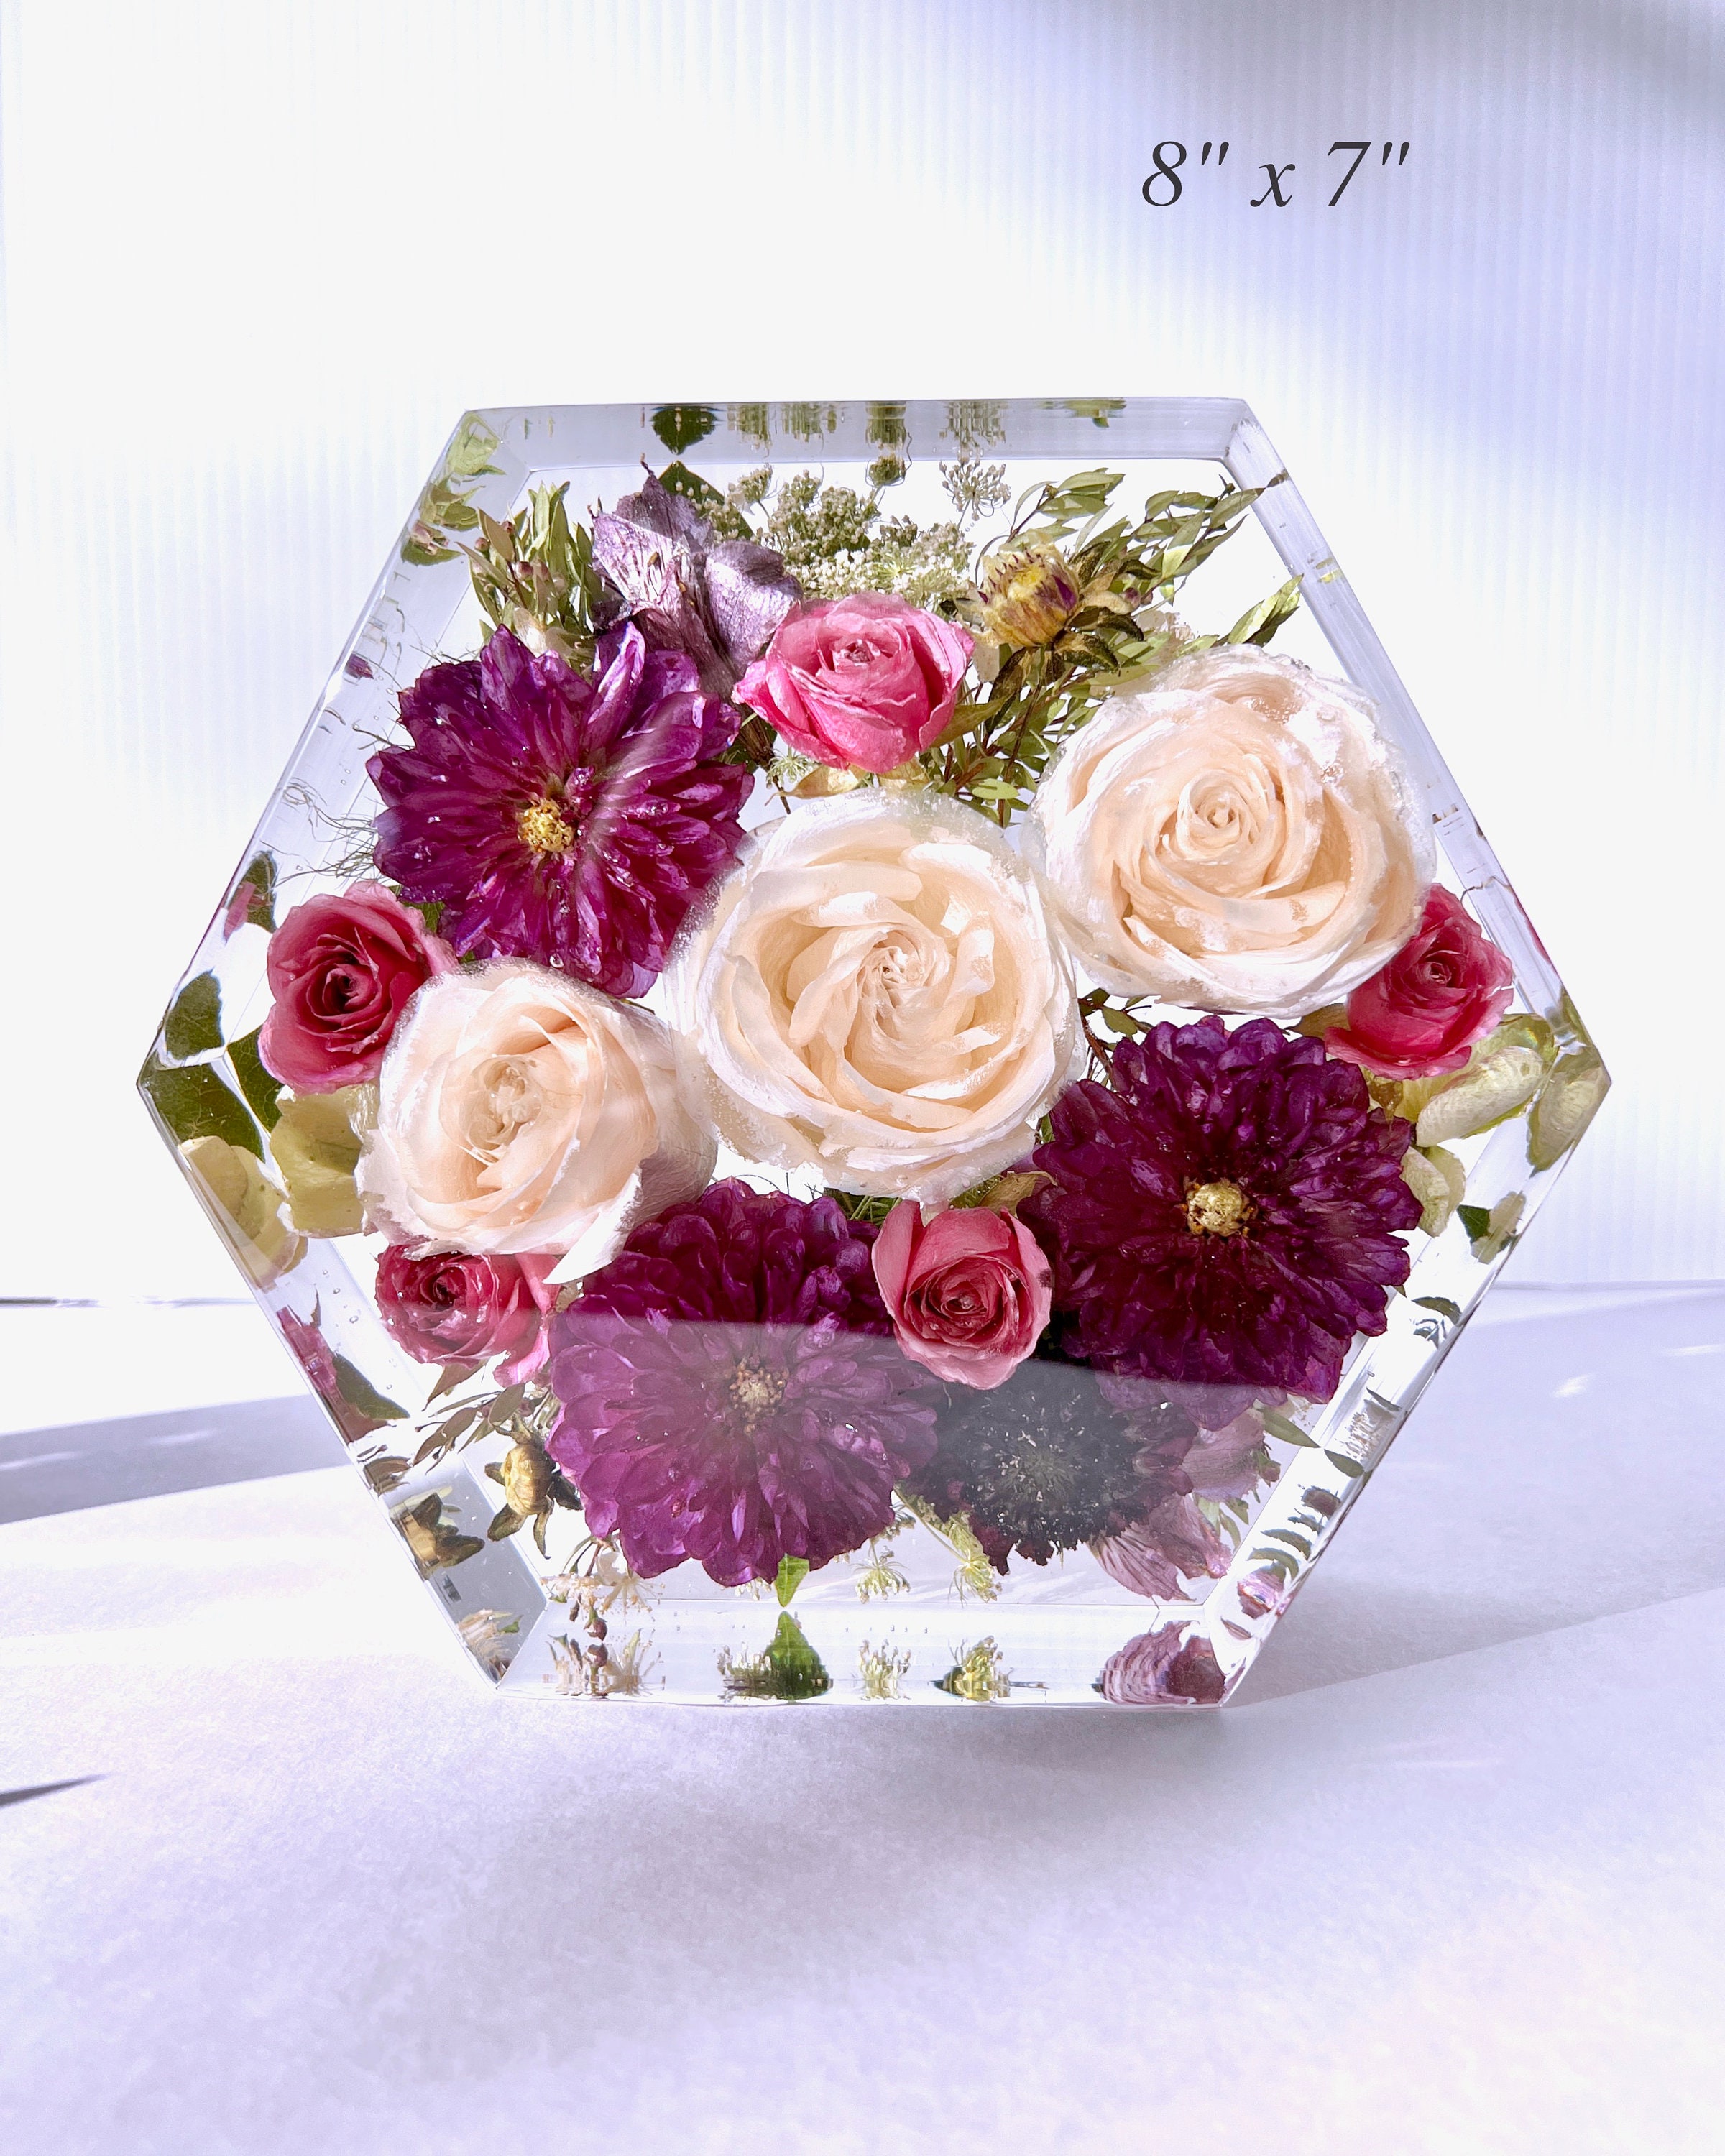 flower preservation kit Archives - Elegant Weddings Blog